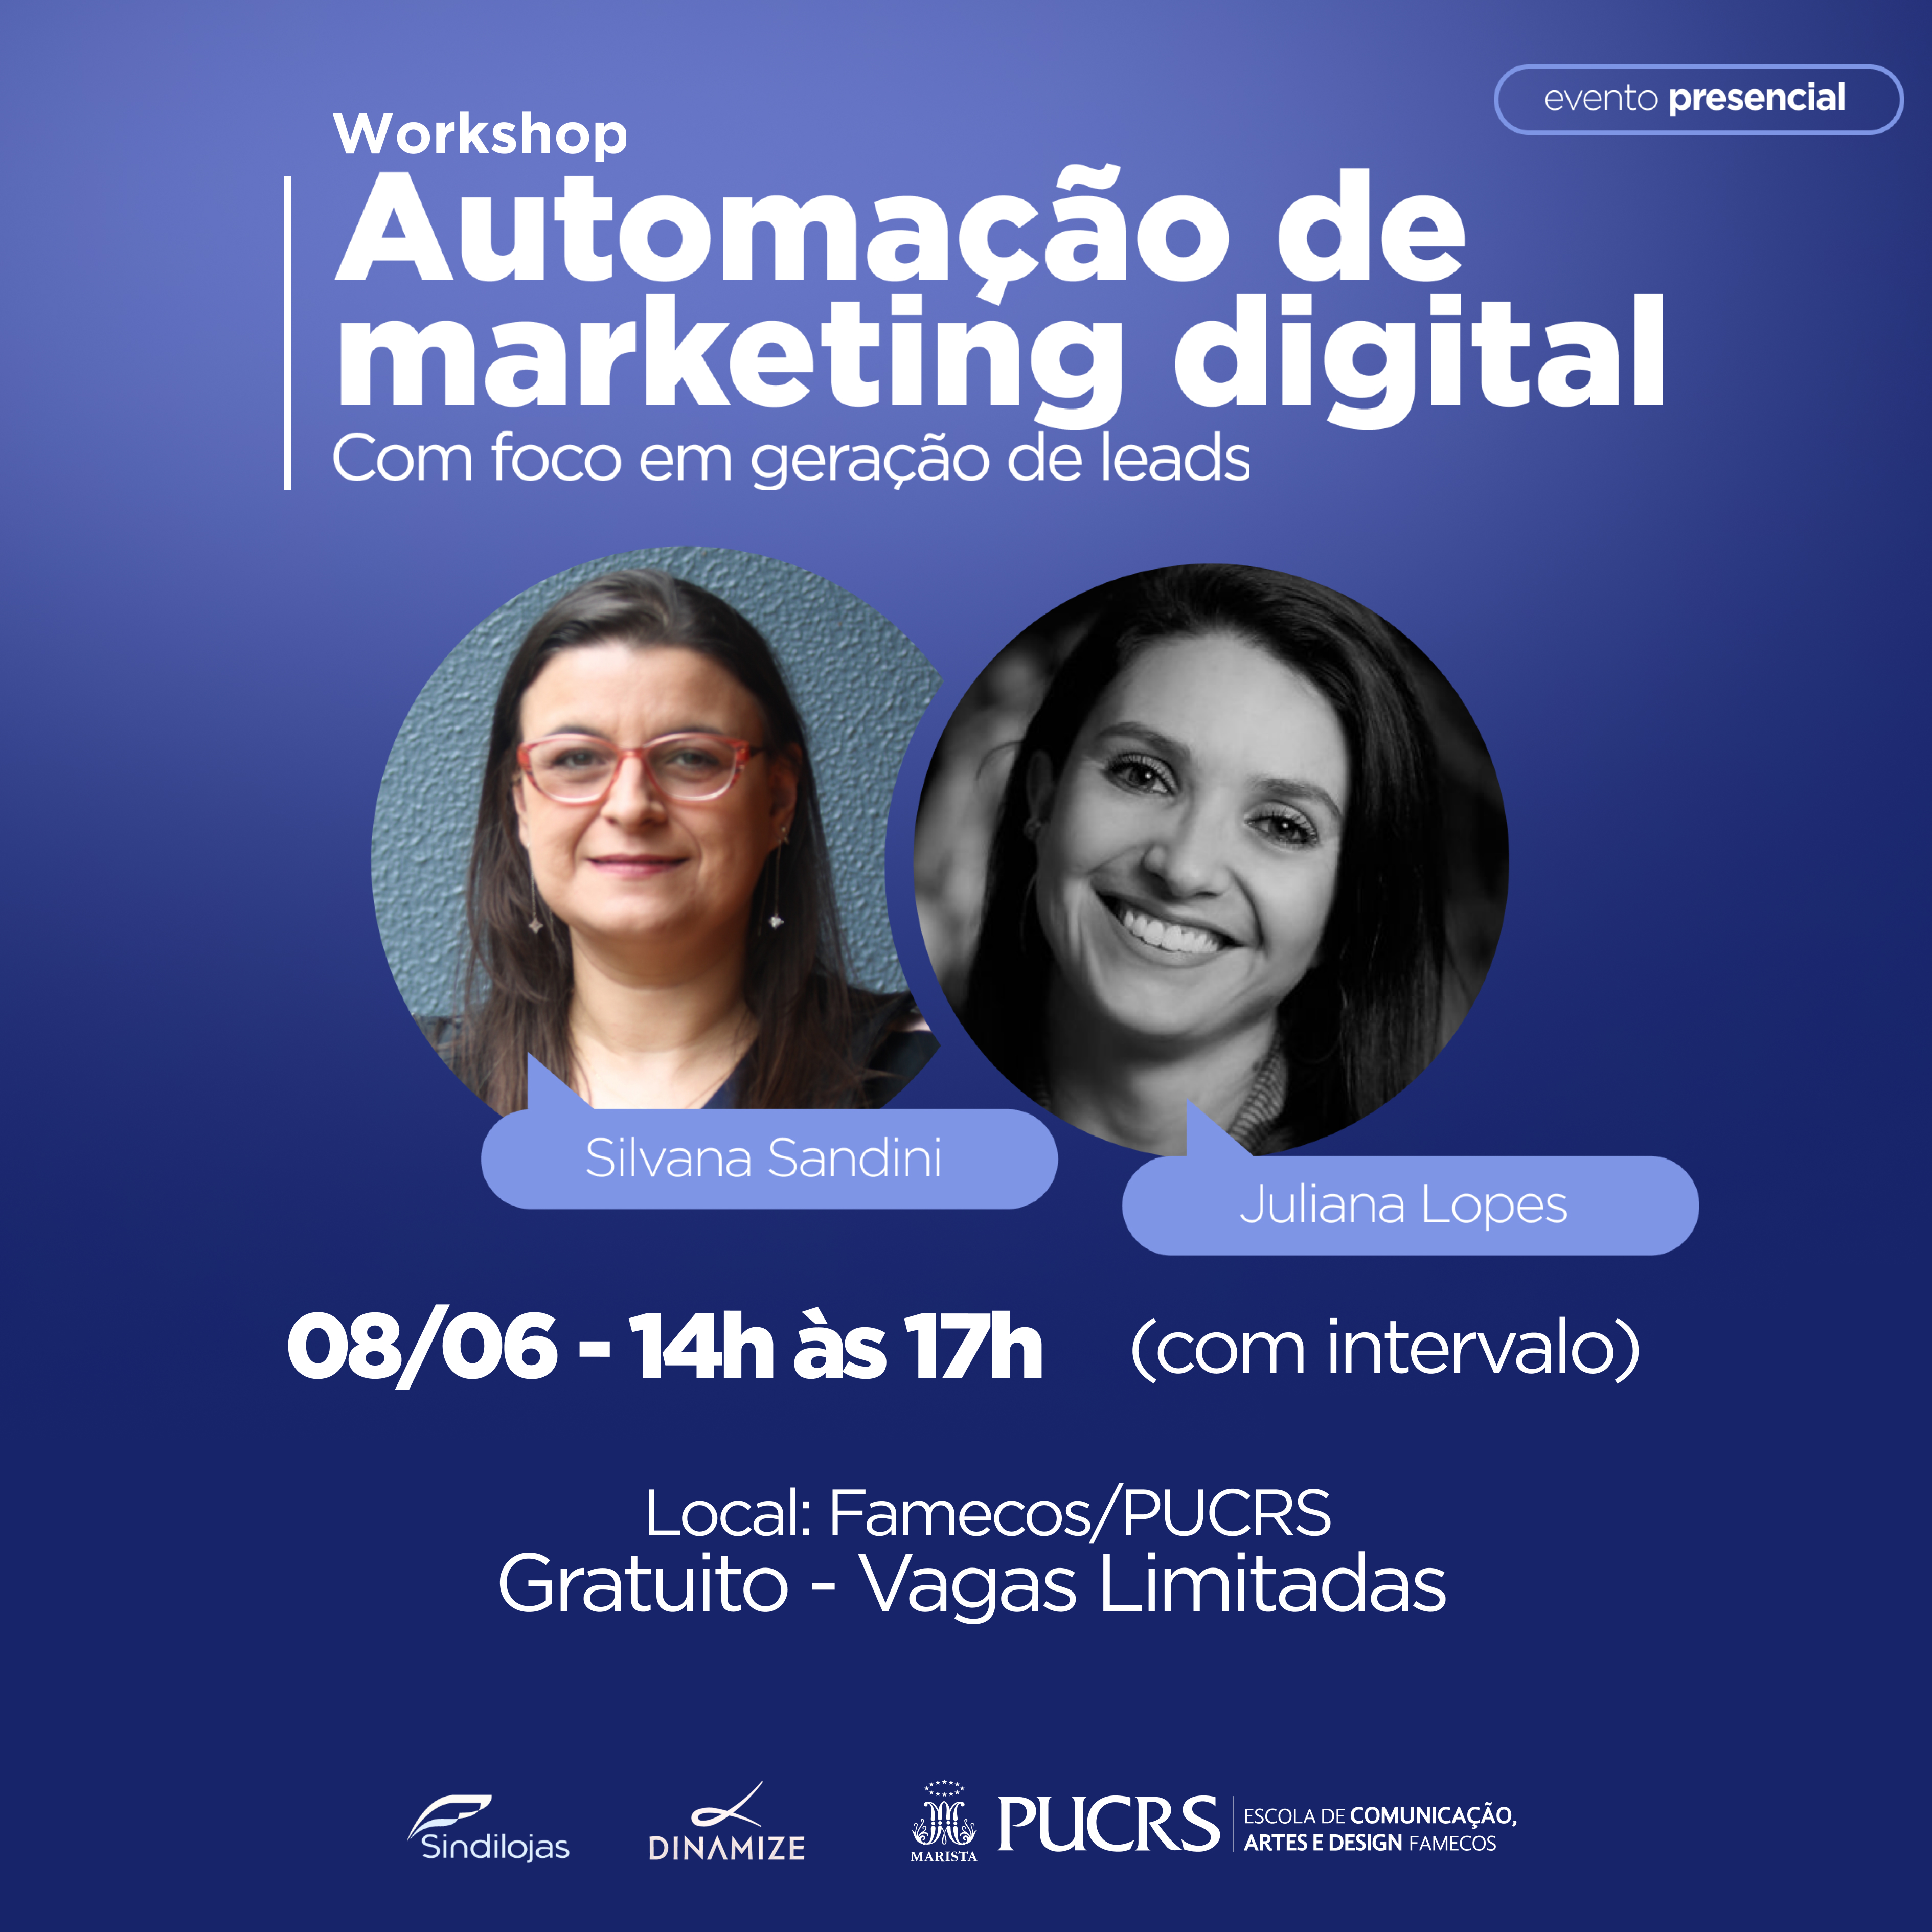 PUCRS, Dinamize e Sindilojas promovem o workshop Automação de marketing digital com foco em geração de leads